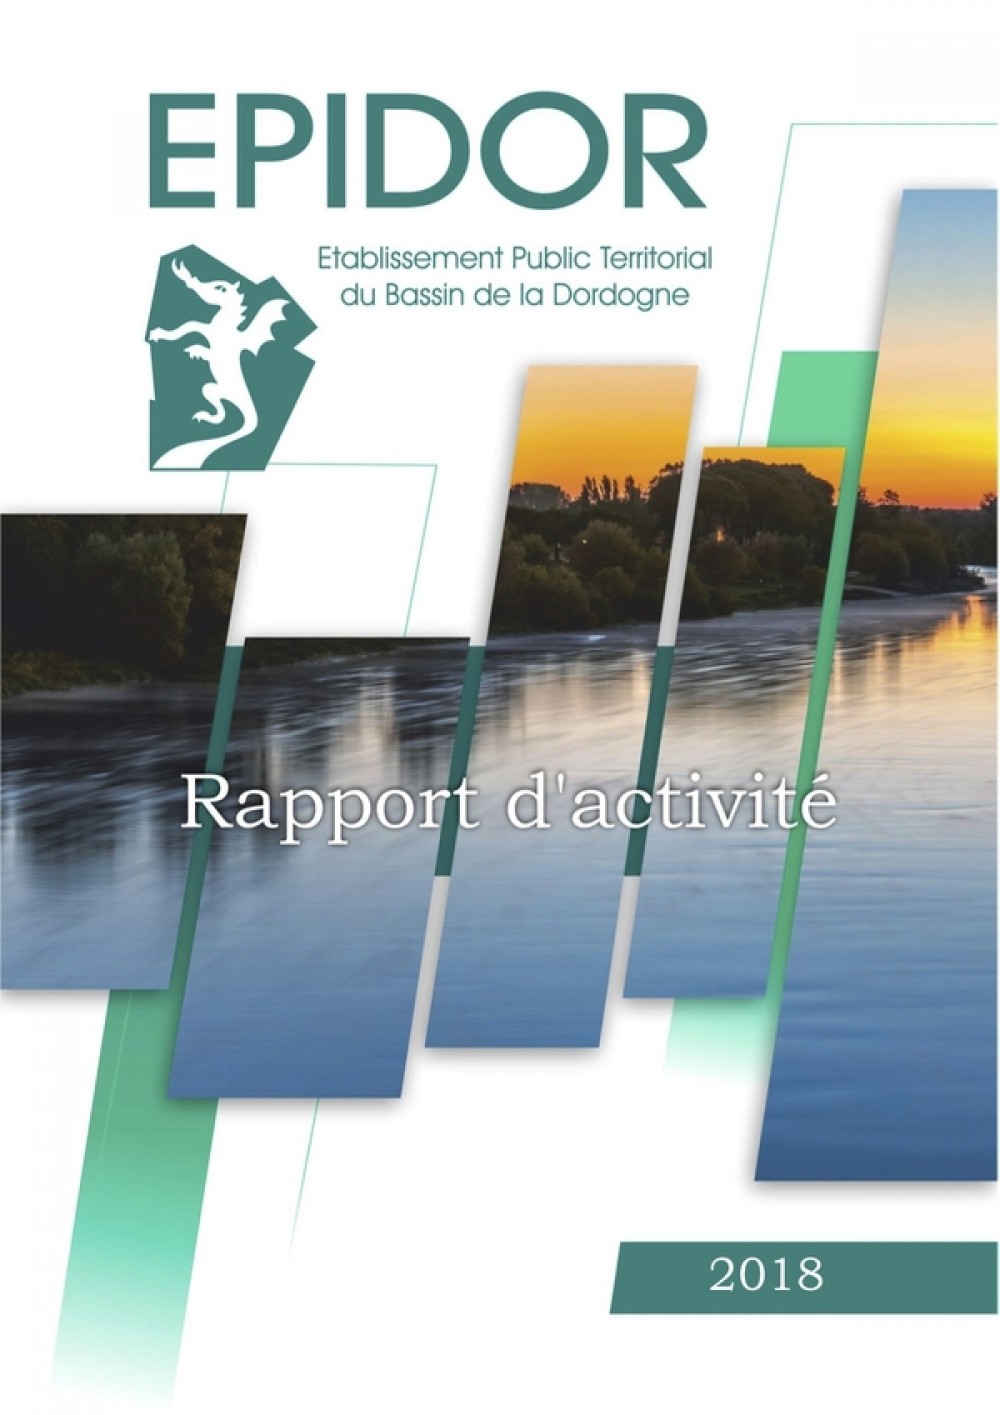 [Publication] Rapport d'activité 2018 - EPIDOR